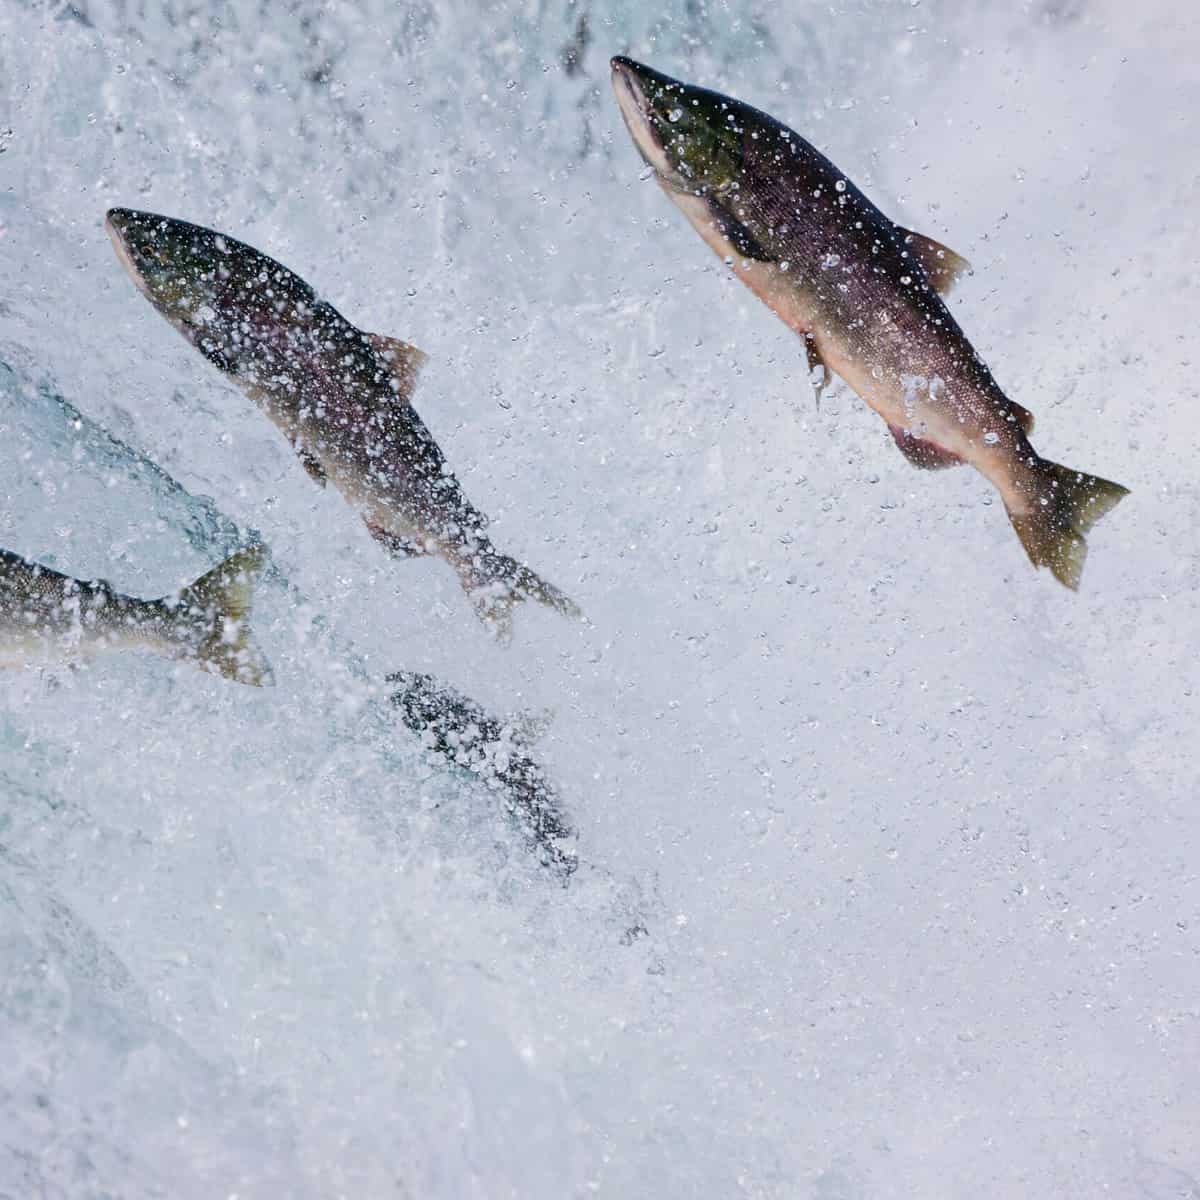 salmon swimming upstream